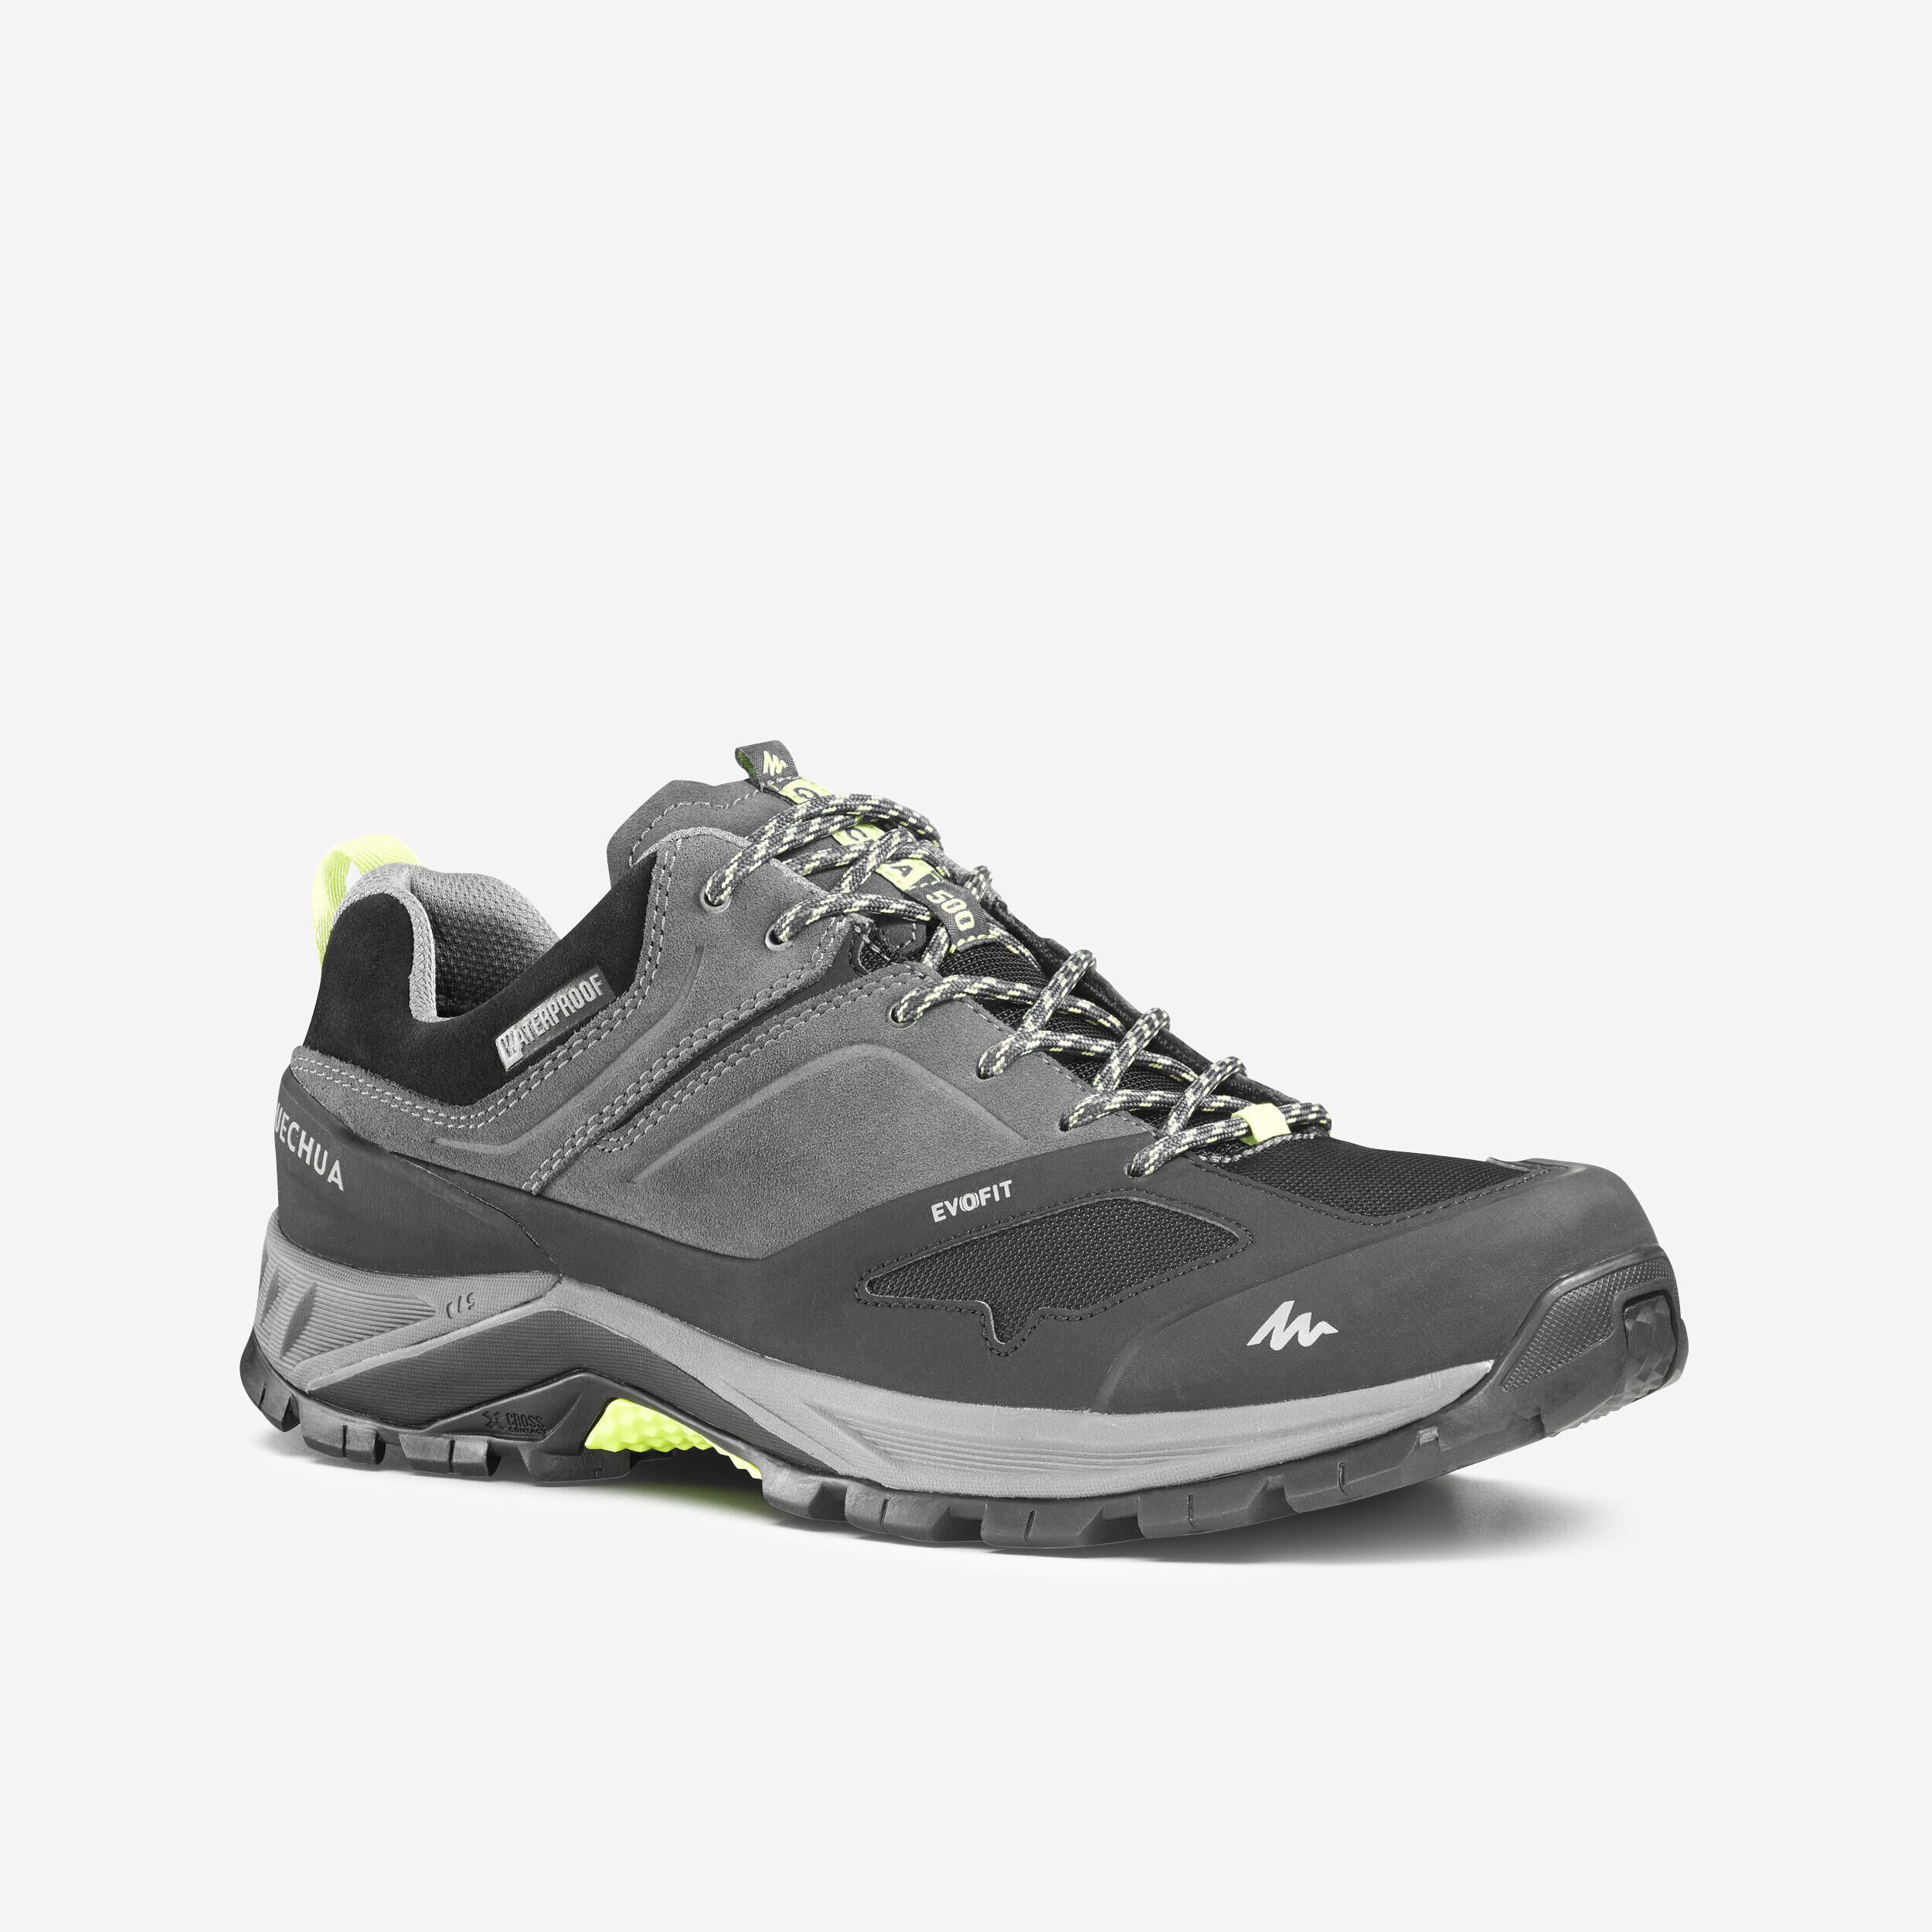 QUECHUA Men's waterproof mountain walking shoes - MH500 - Grey